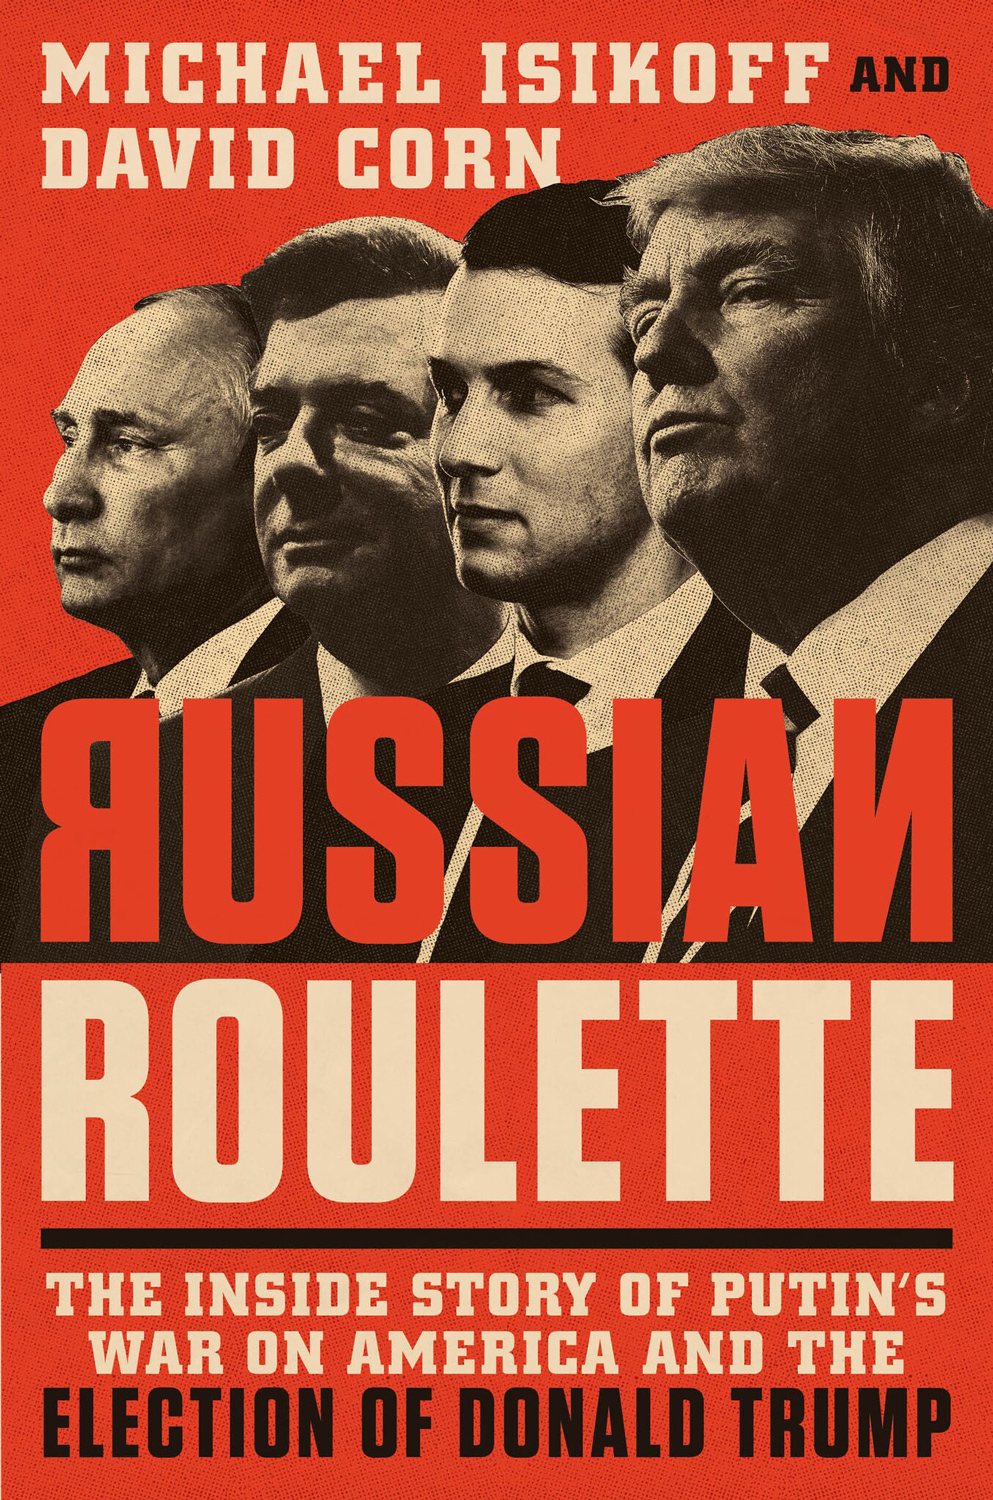 20180719slant-russianroulette-book-hardcover_2048x2048